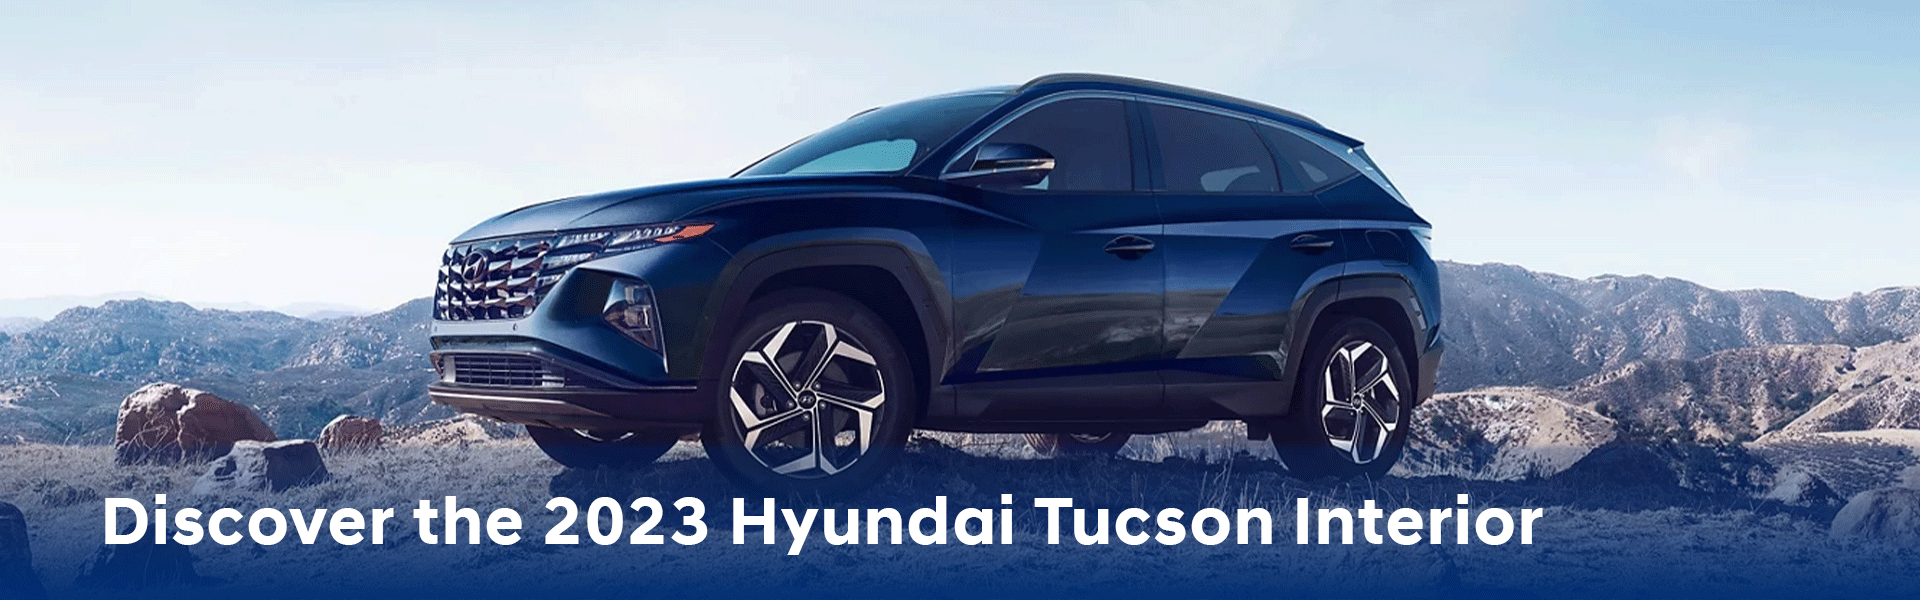 2023 Hyundai Tucson Interior